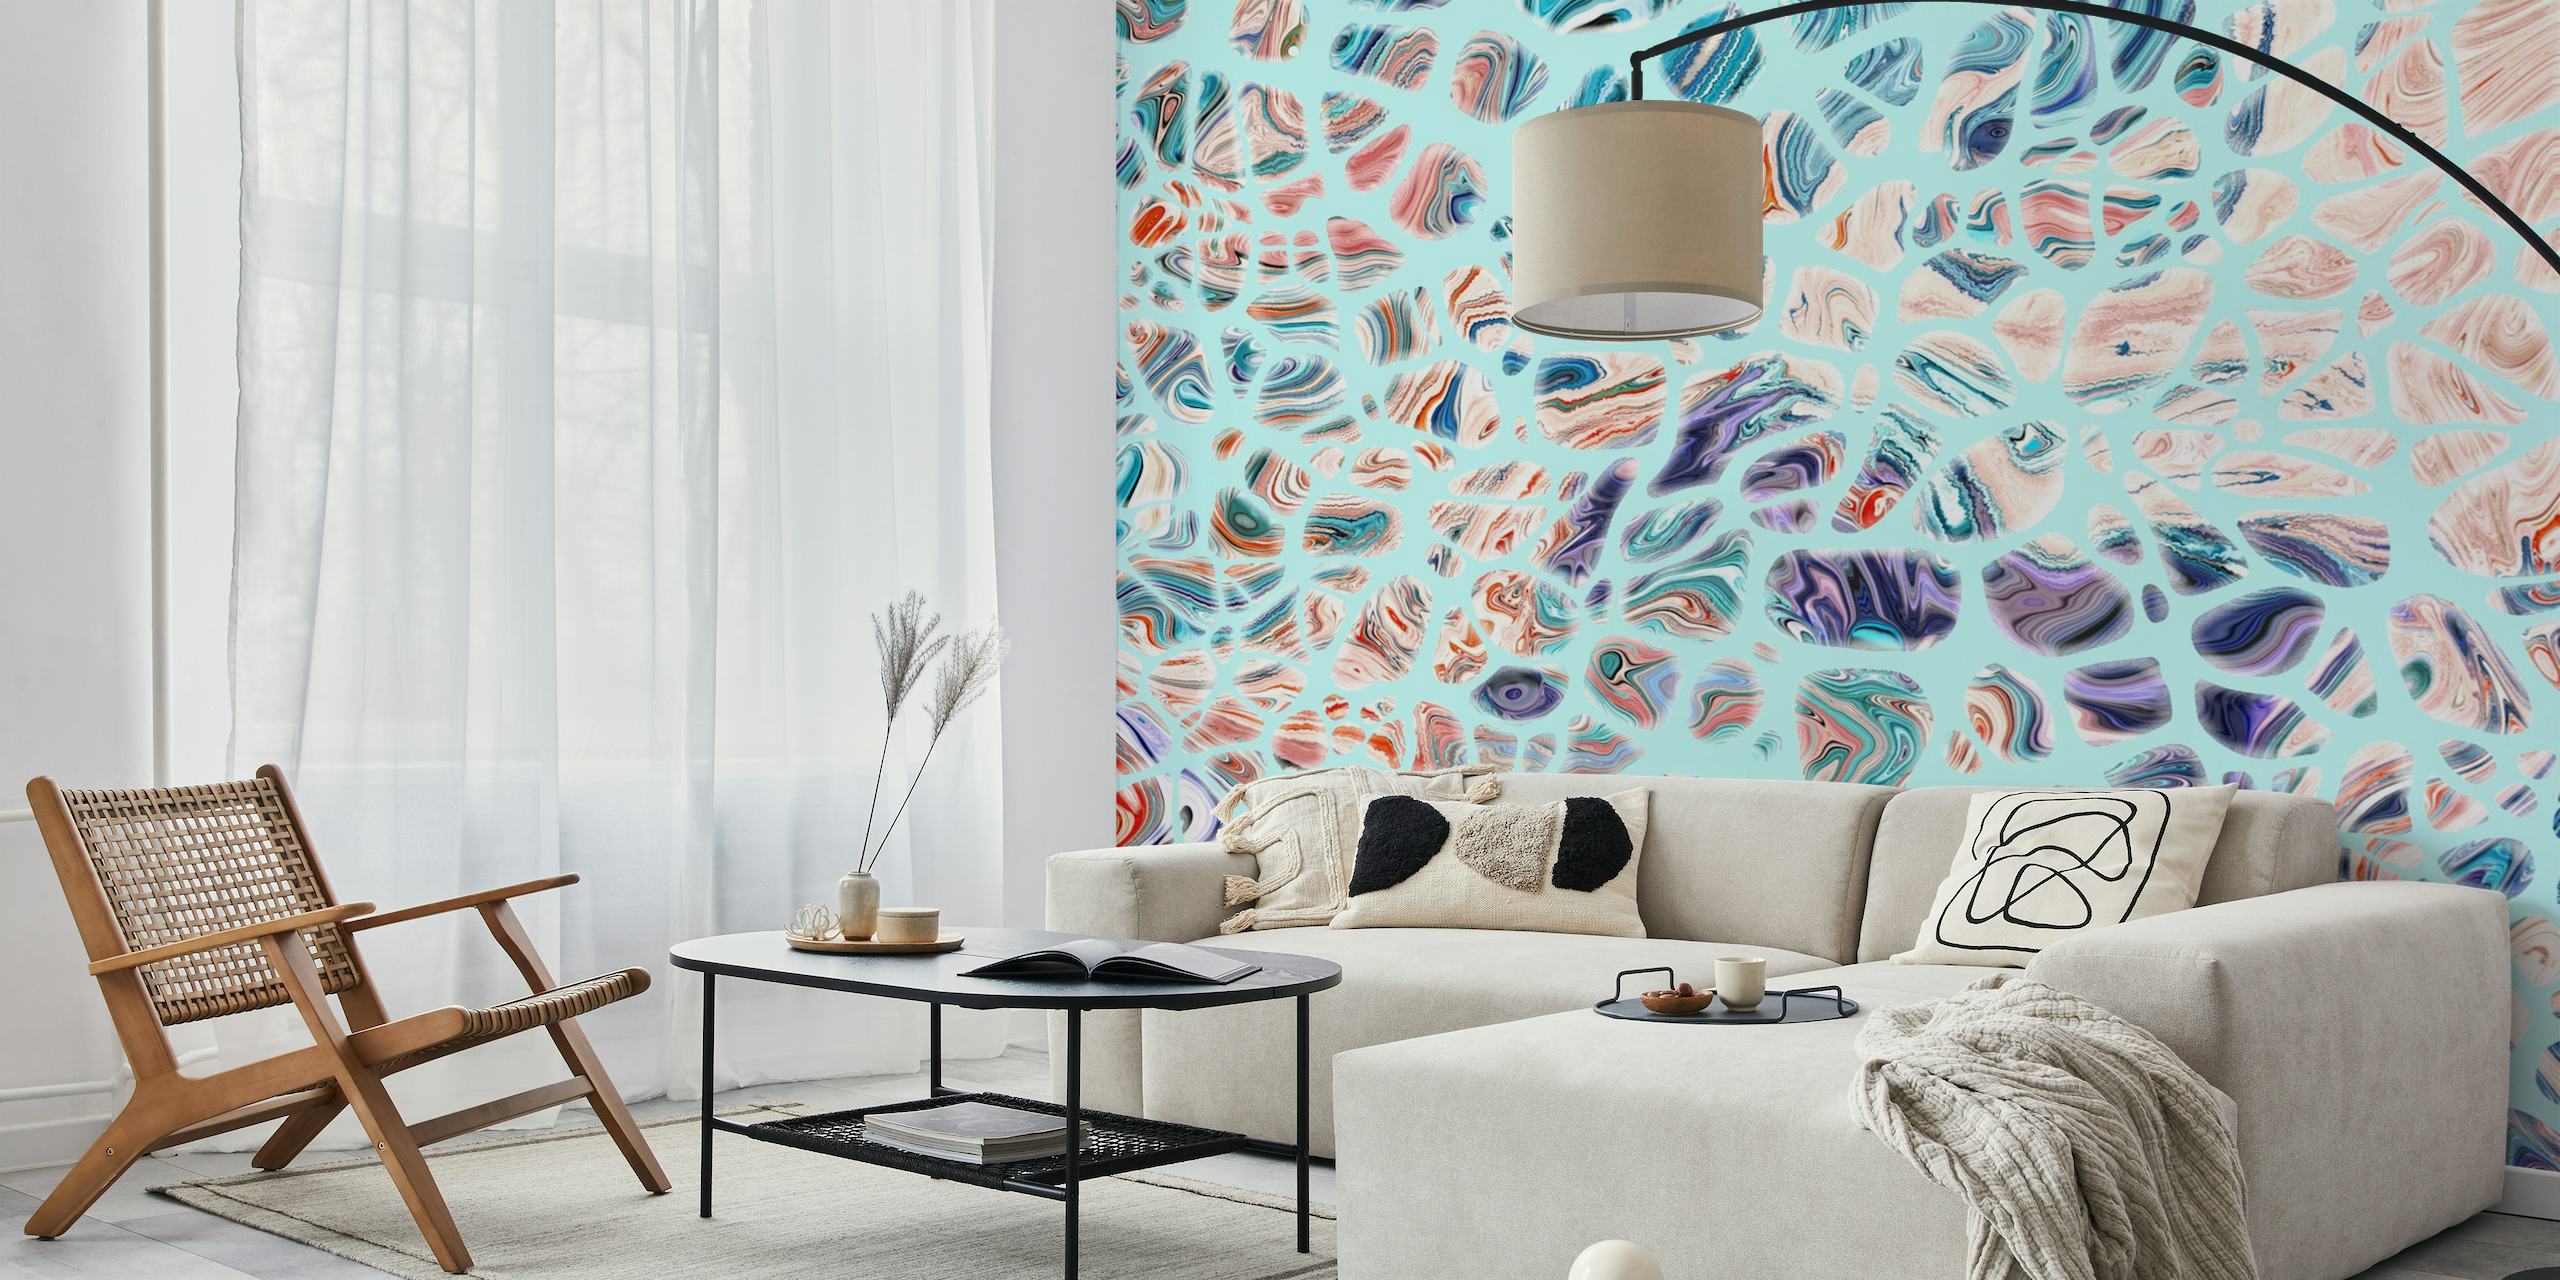 Blå abstrakt vægmaleri med hvirvlende mønstre i nuancer af blå og violet.